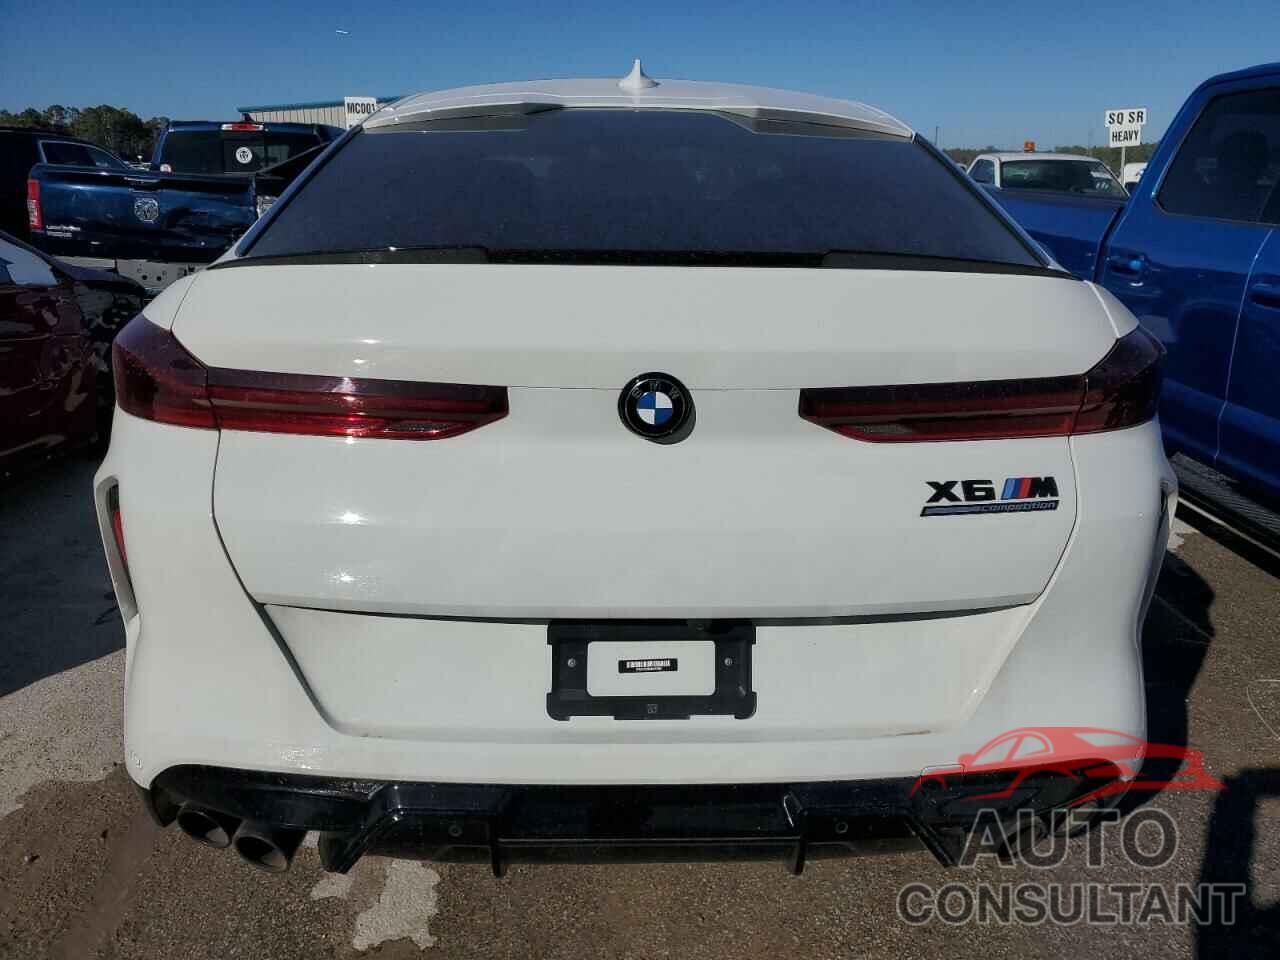 BMW X6 2022 - 5YMCY0C08N9K52980